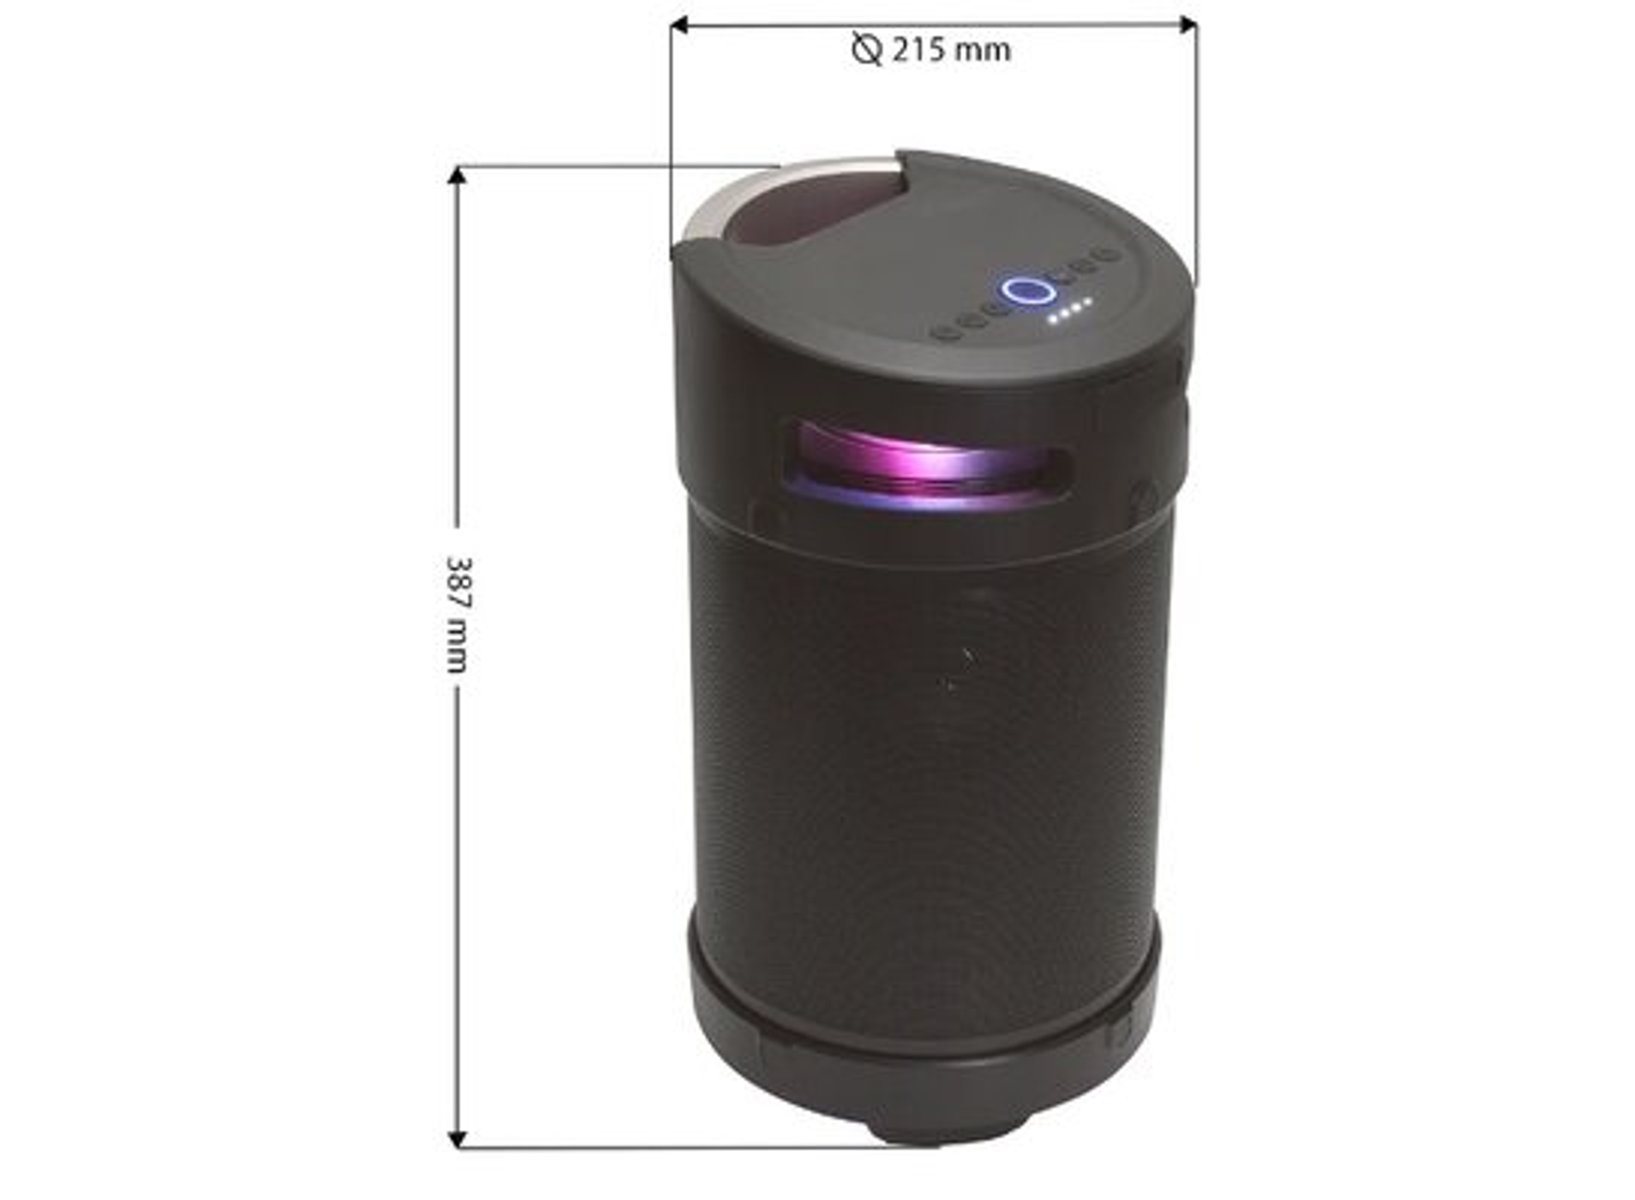 MANTA SPK5120 Bluetooth Schwarz Lautsprecher